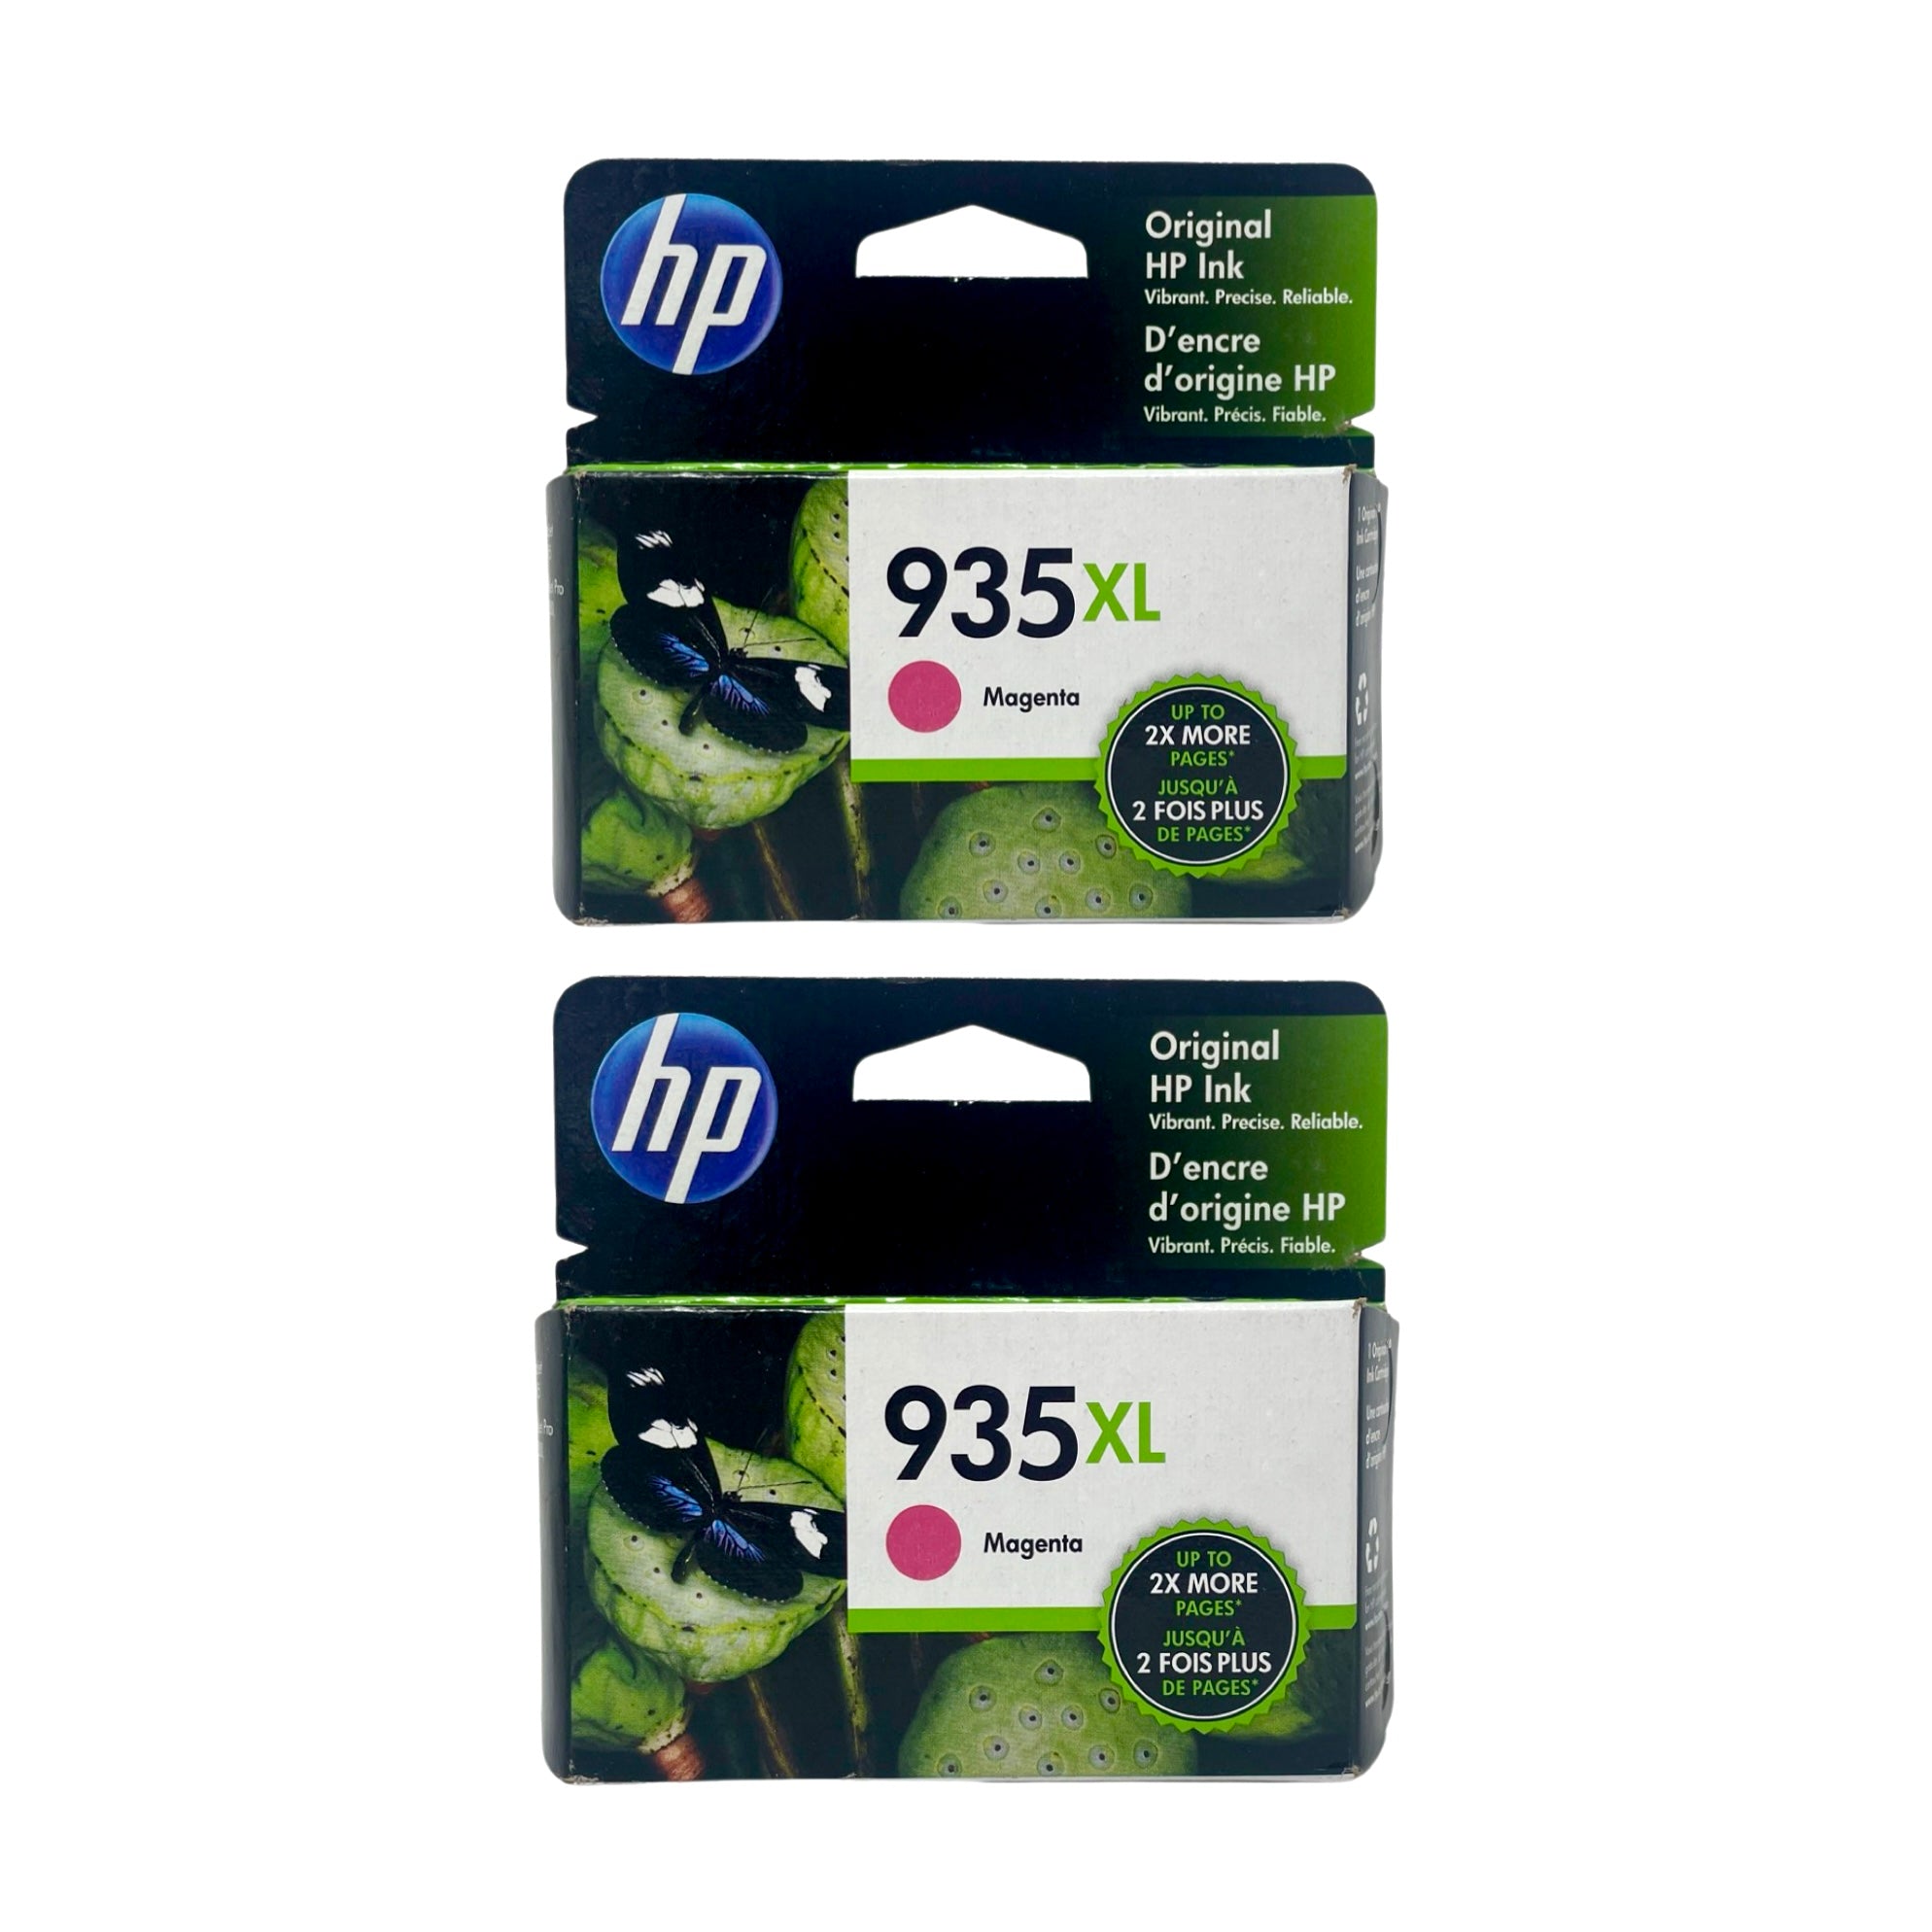 Genuine HP 935XL Magenta High Yield Ink Cartridges, 2-Pack